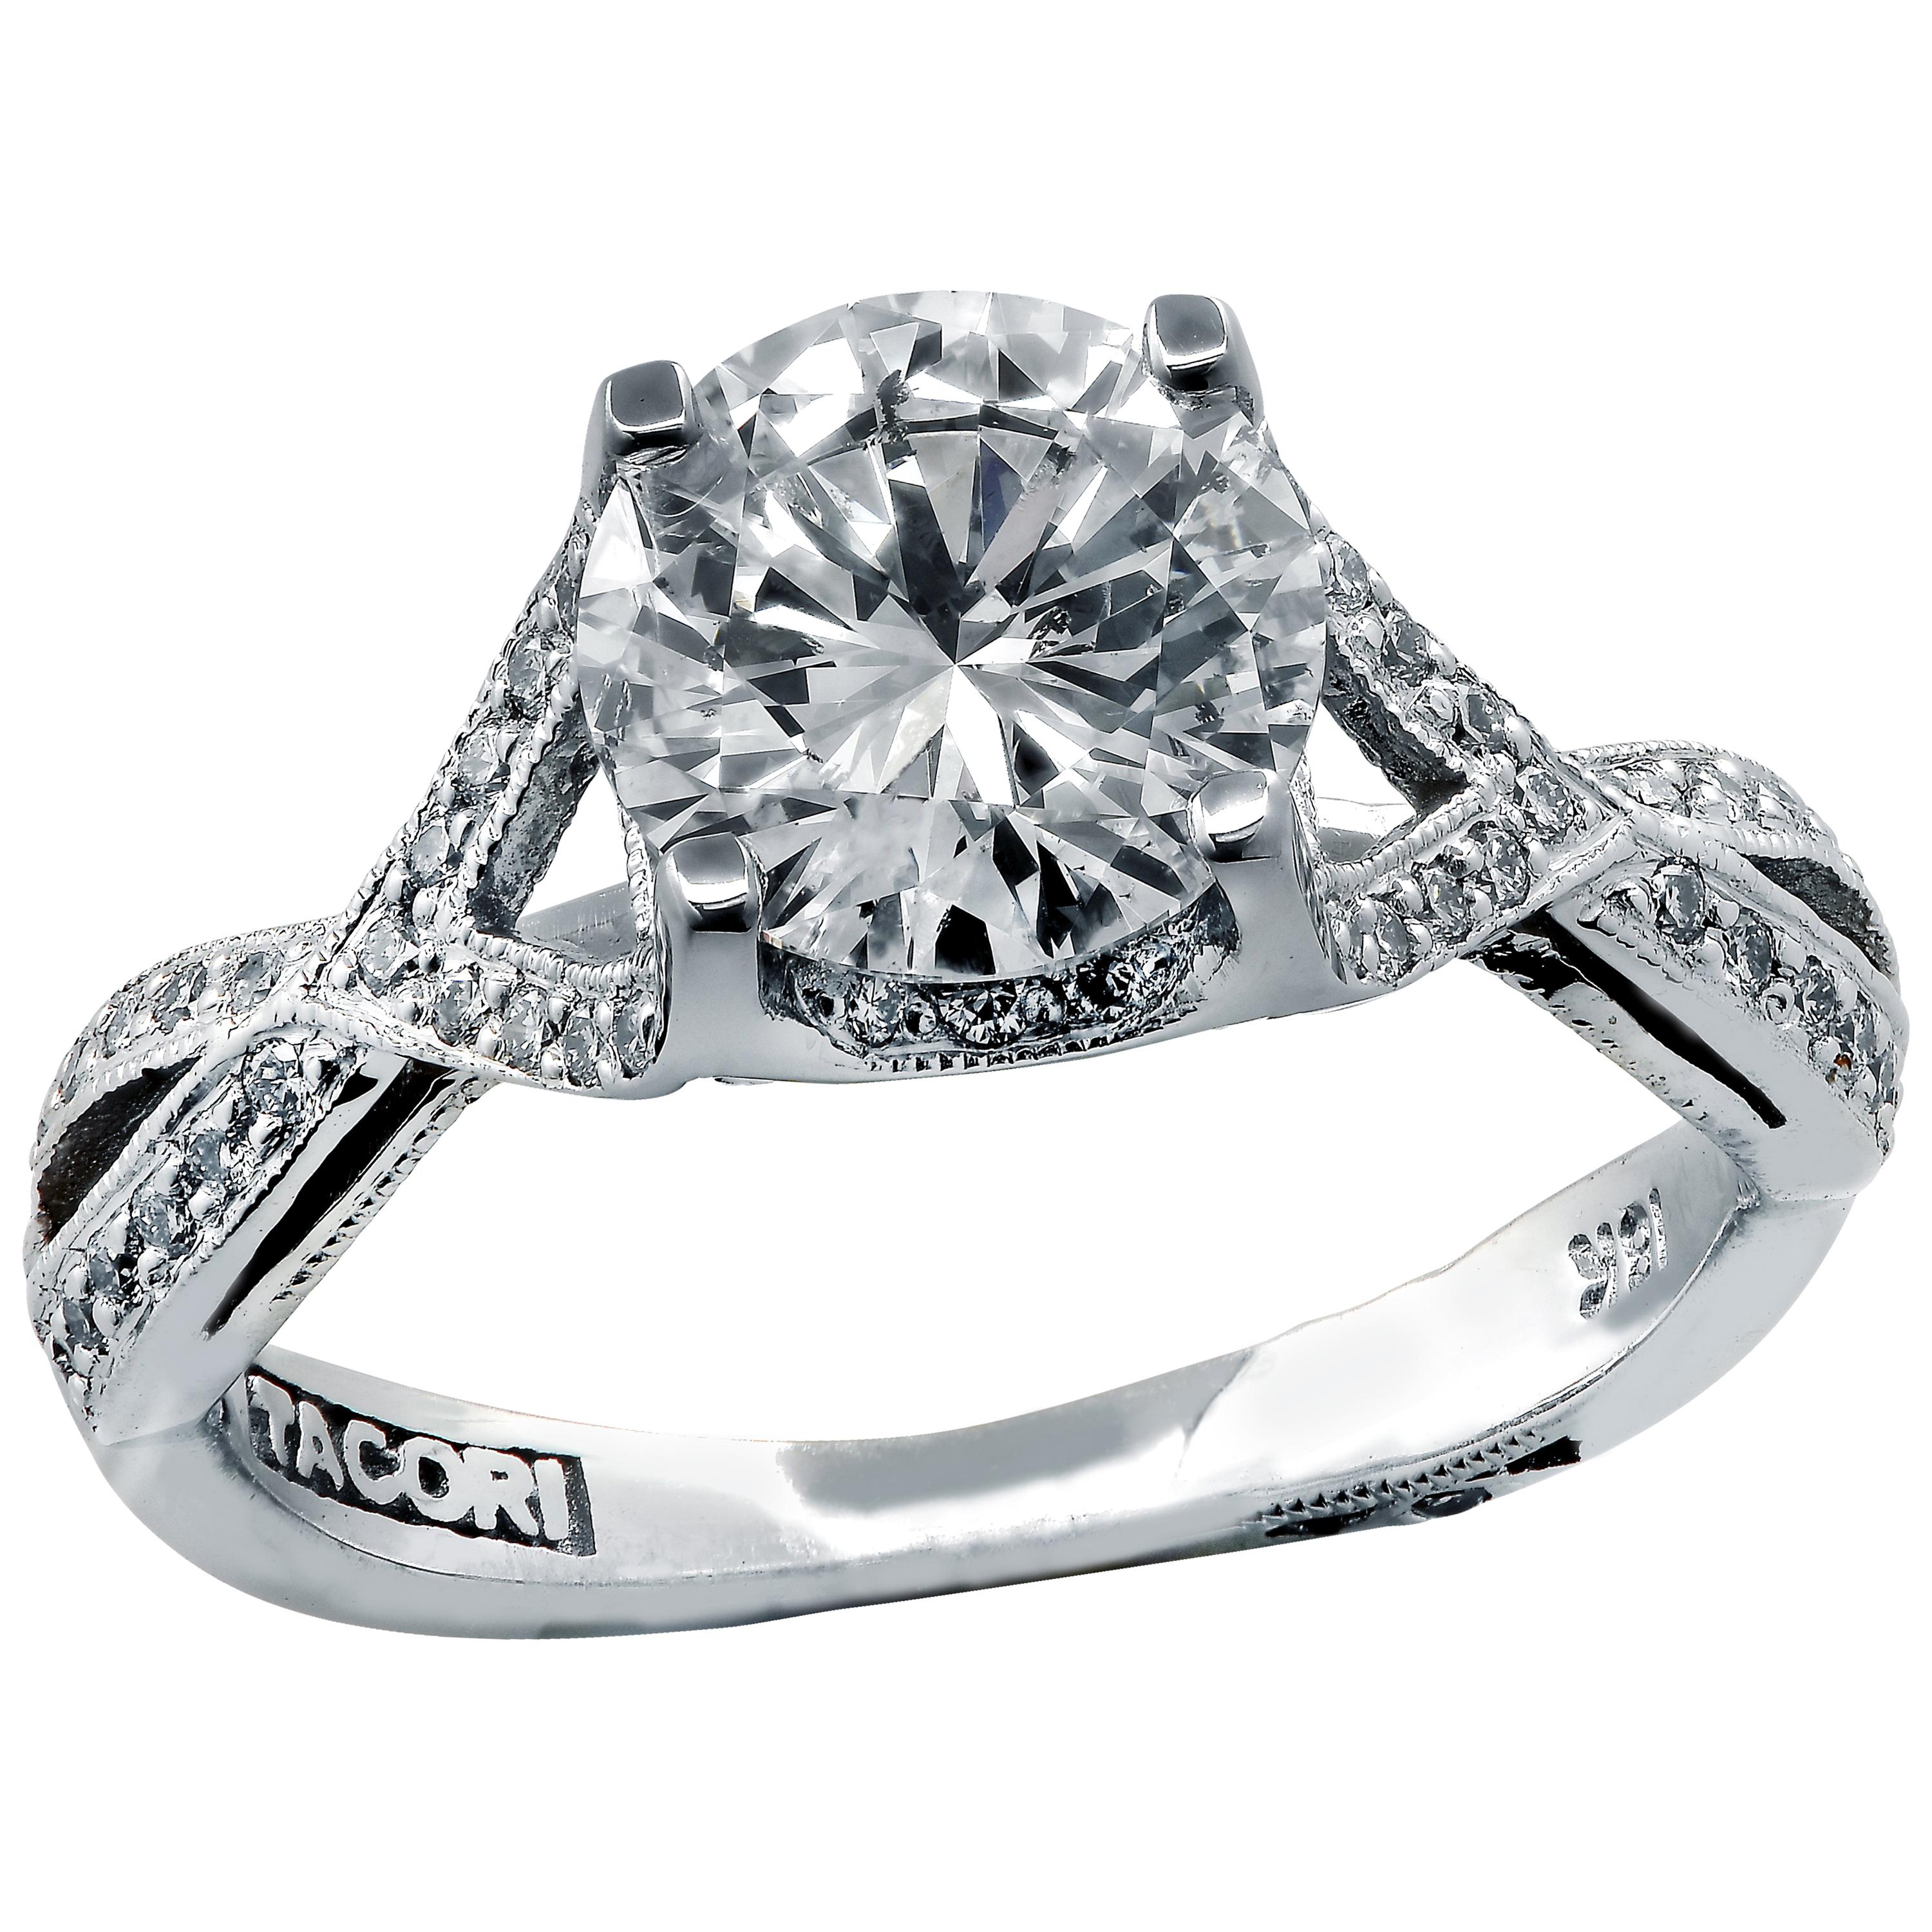 Tacori GIA Certified 1.32 Carat Diamond Engagement Ring